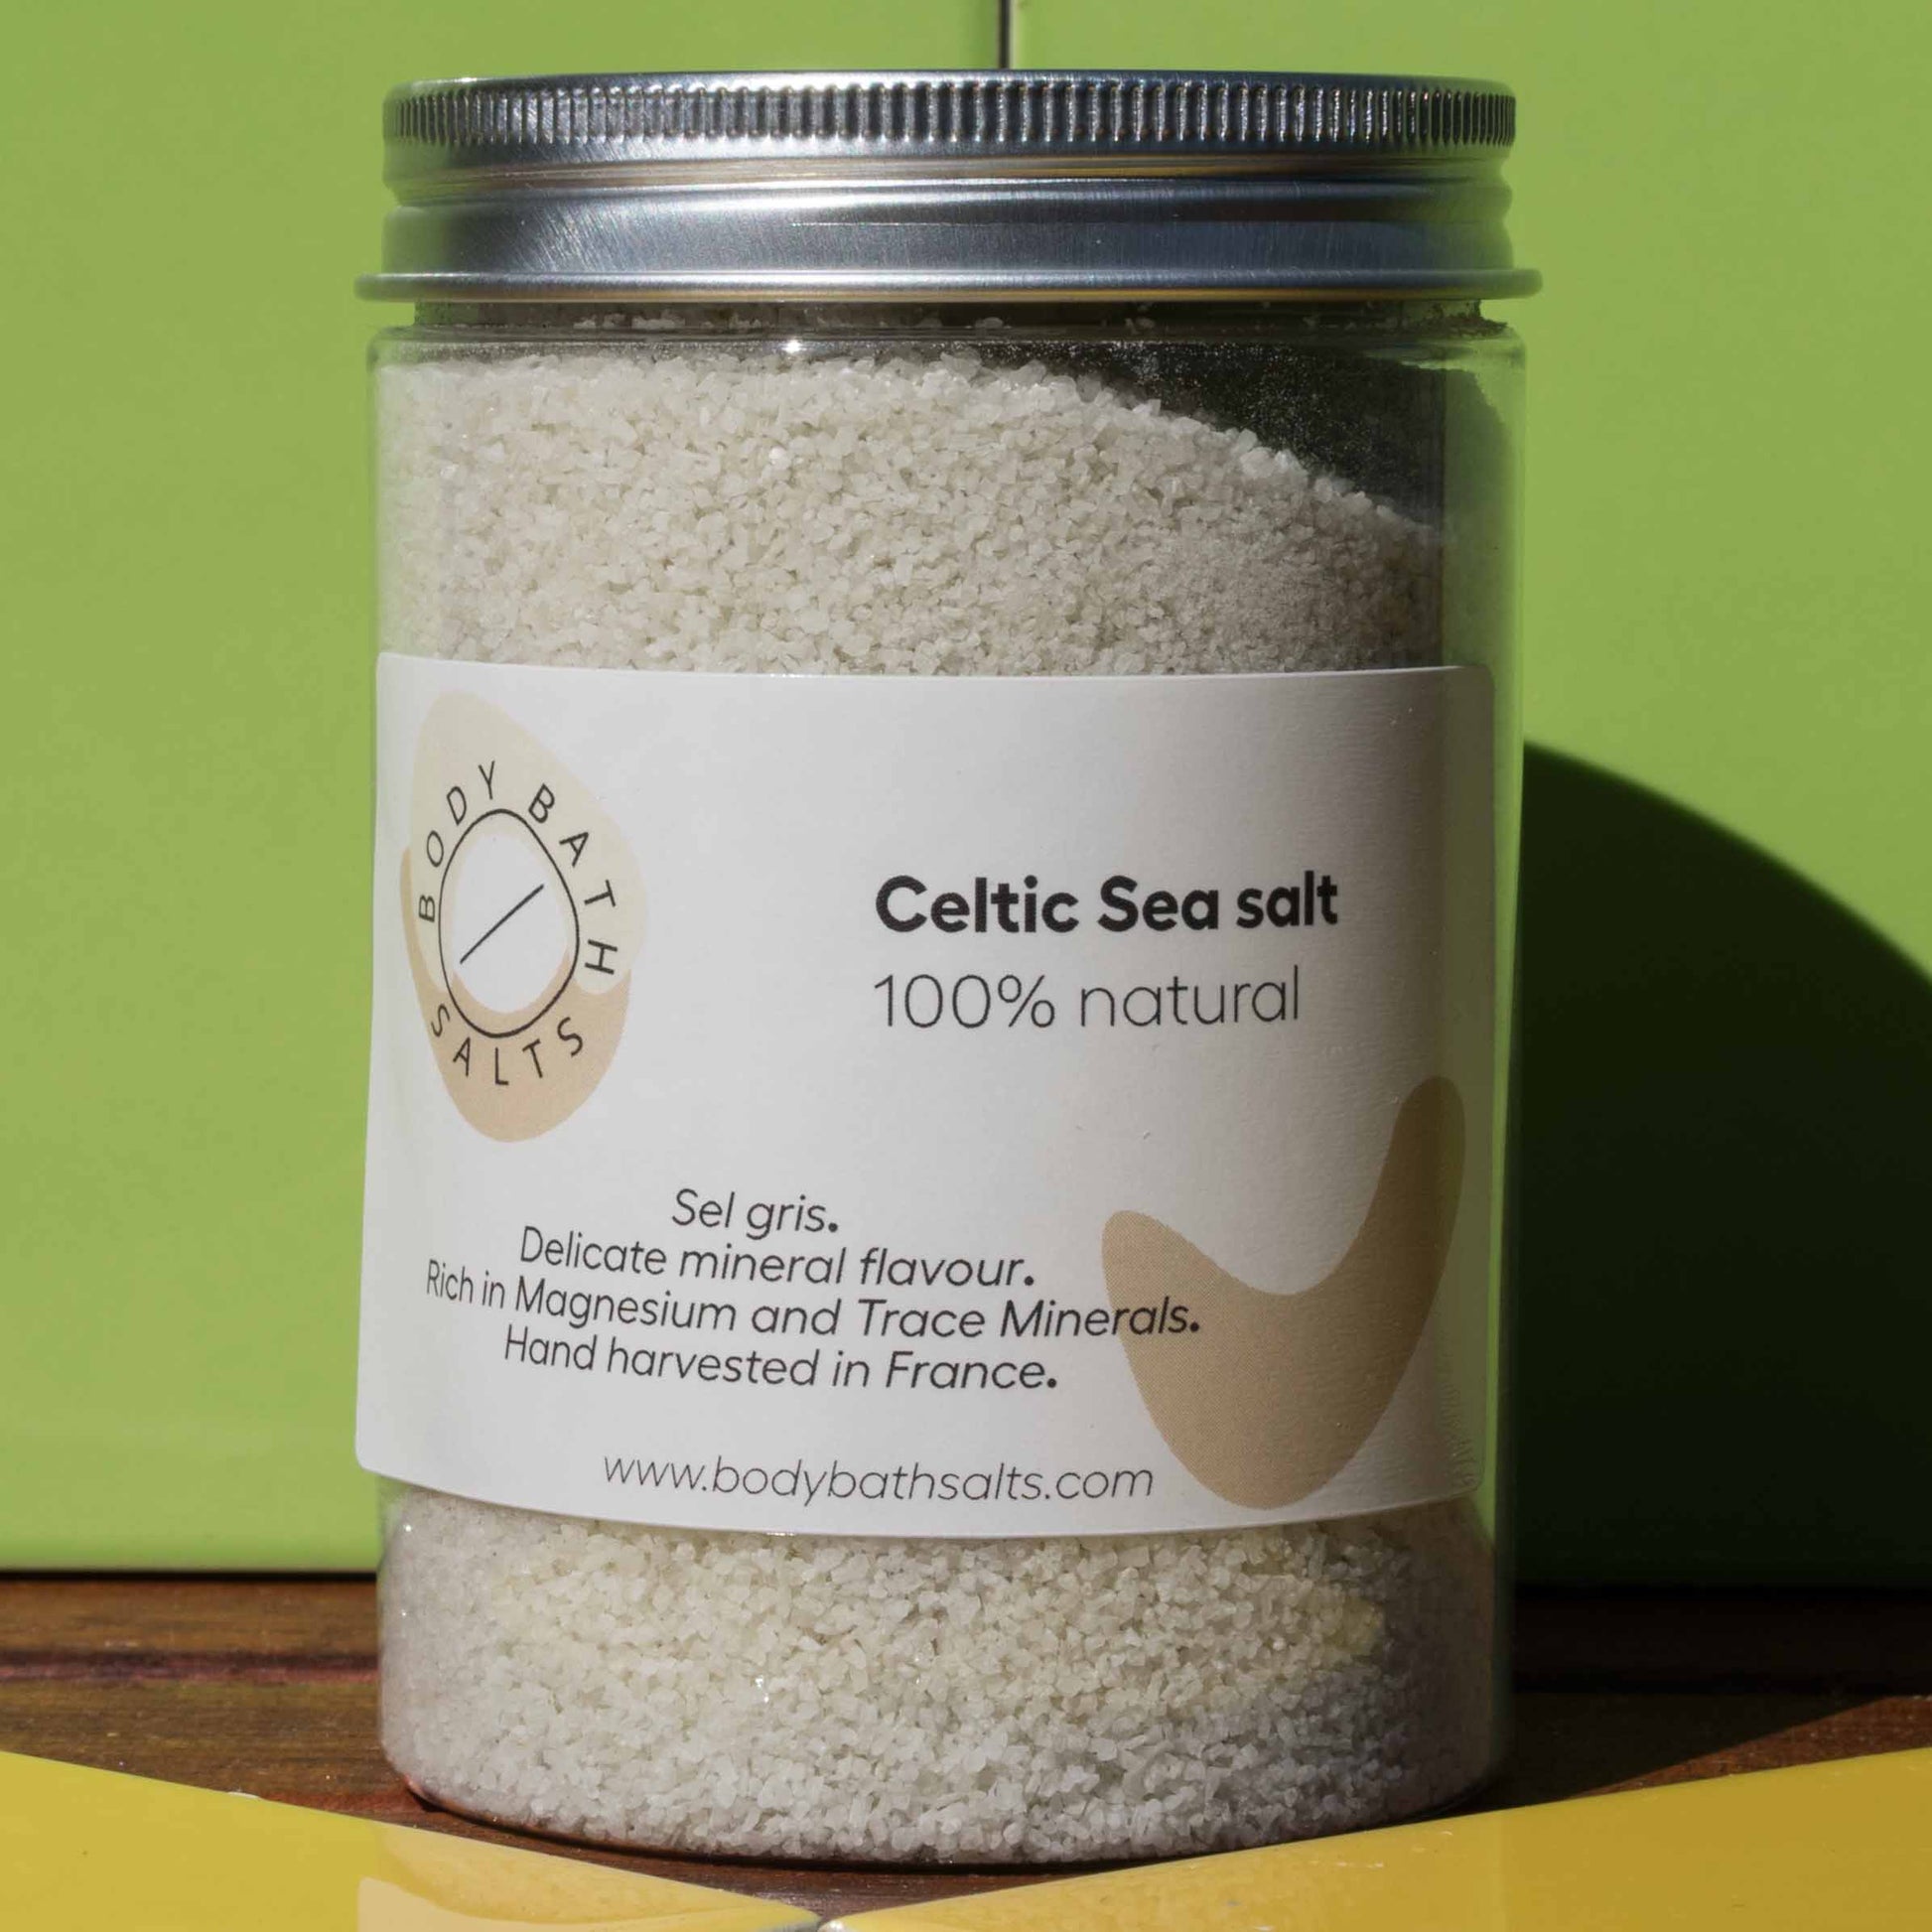  Celtic Sea Salt Sal de baño de cristal entero de cuerpo raro,  baño relajante para relajación, aliviar los síntomas de enfermedades,  dolores y dolores, todo natural, vegano y sin gluten, 5